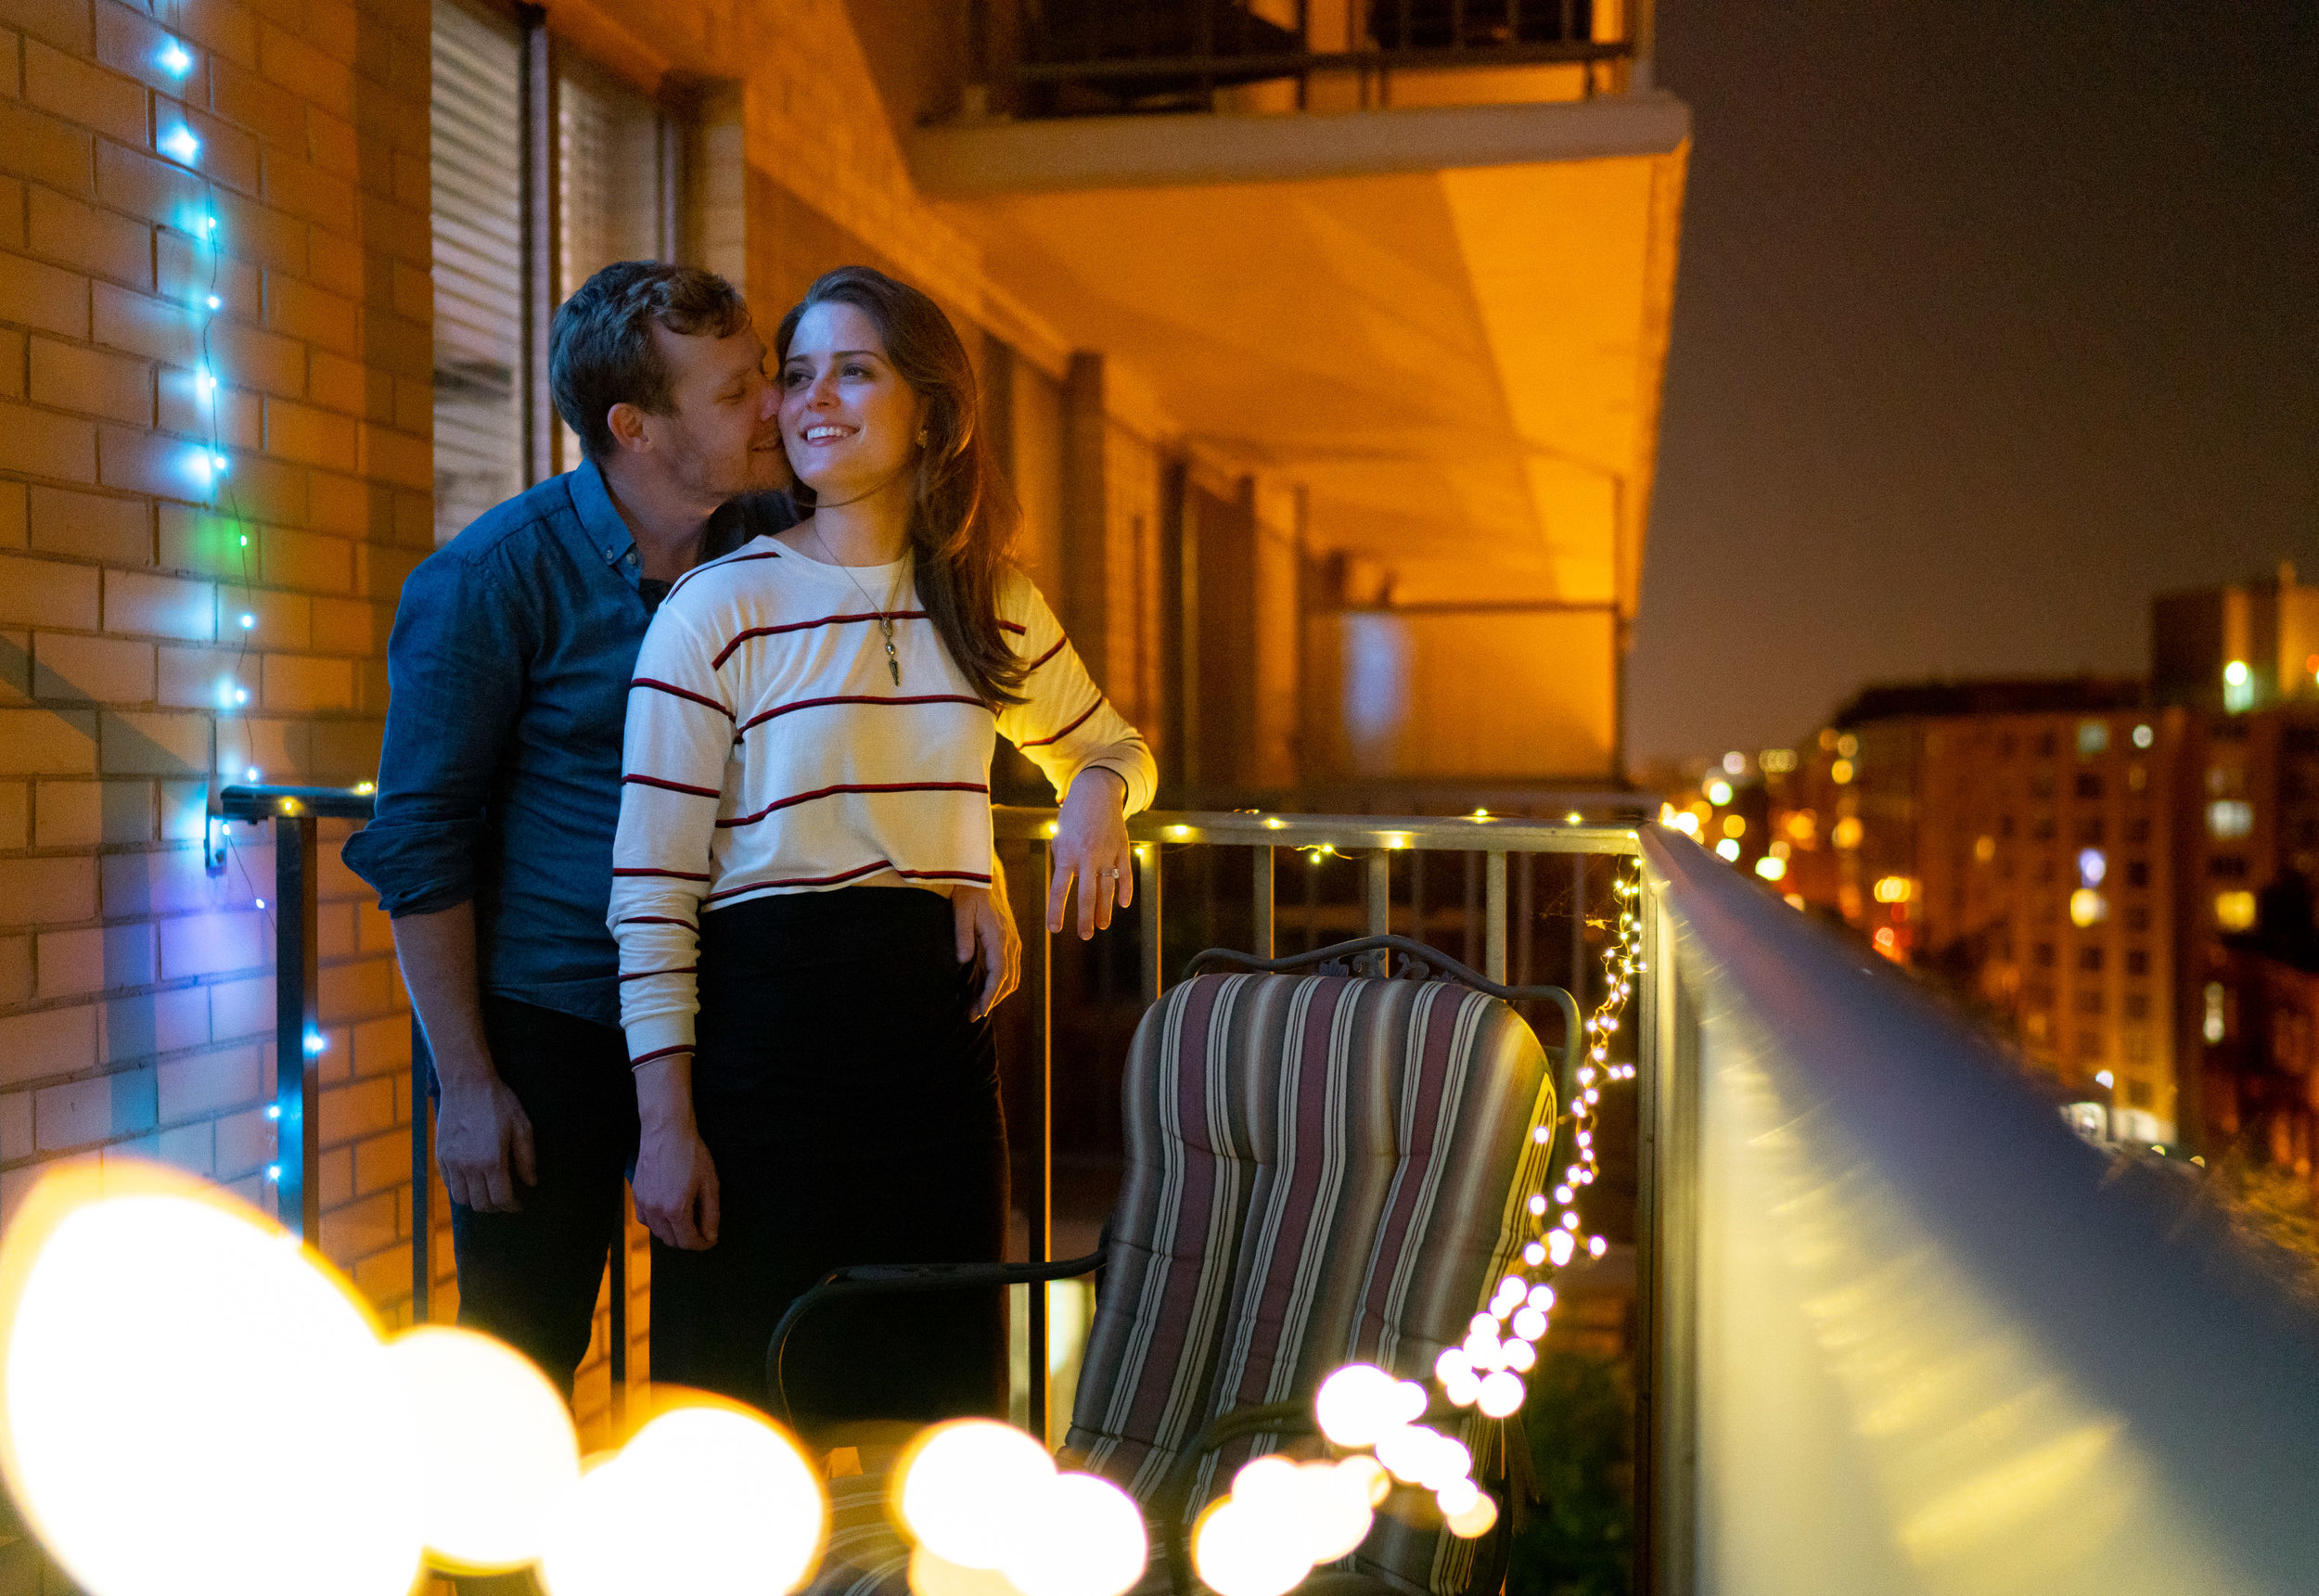 Washington DC apartment balcony engagement photos